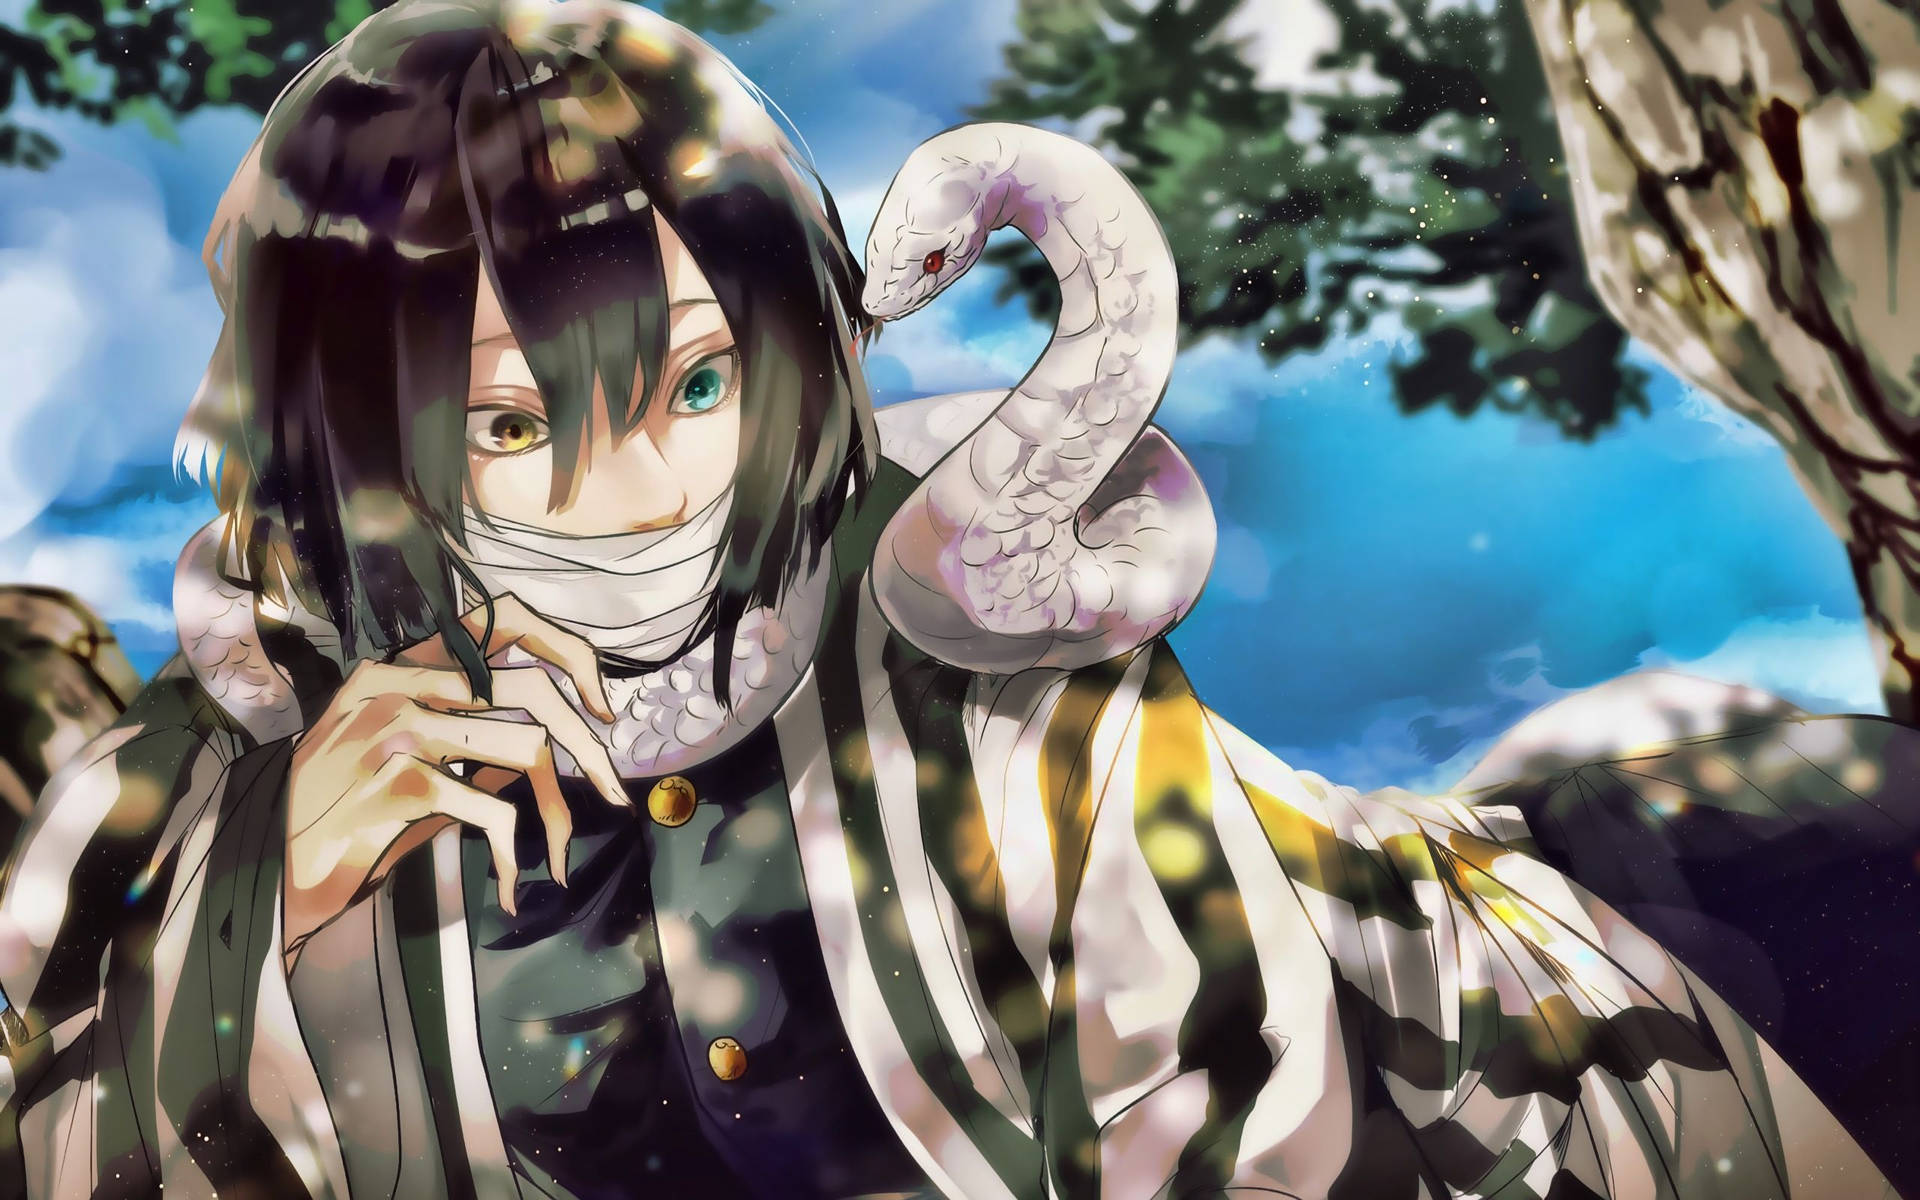 Download Obanai Iguro With Pet Snake Wallpaper